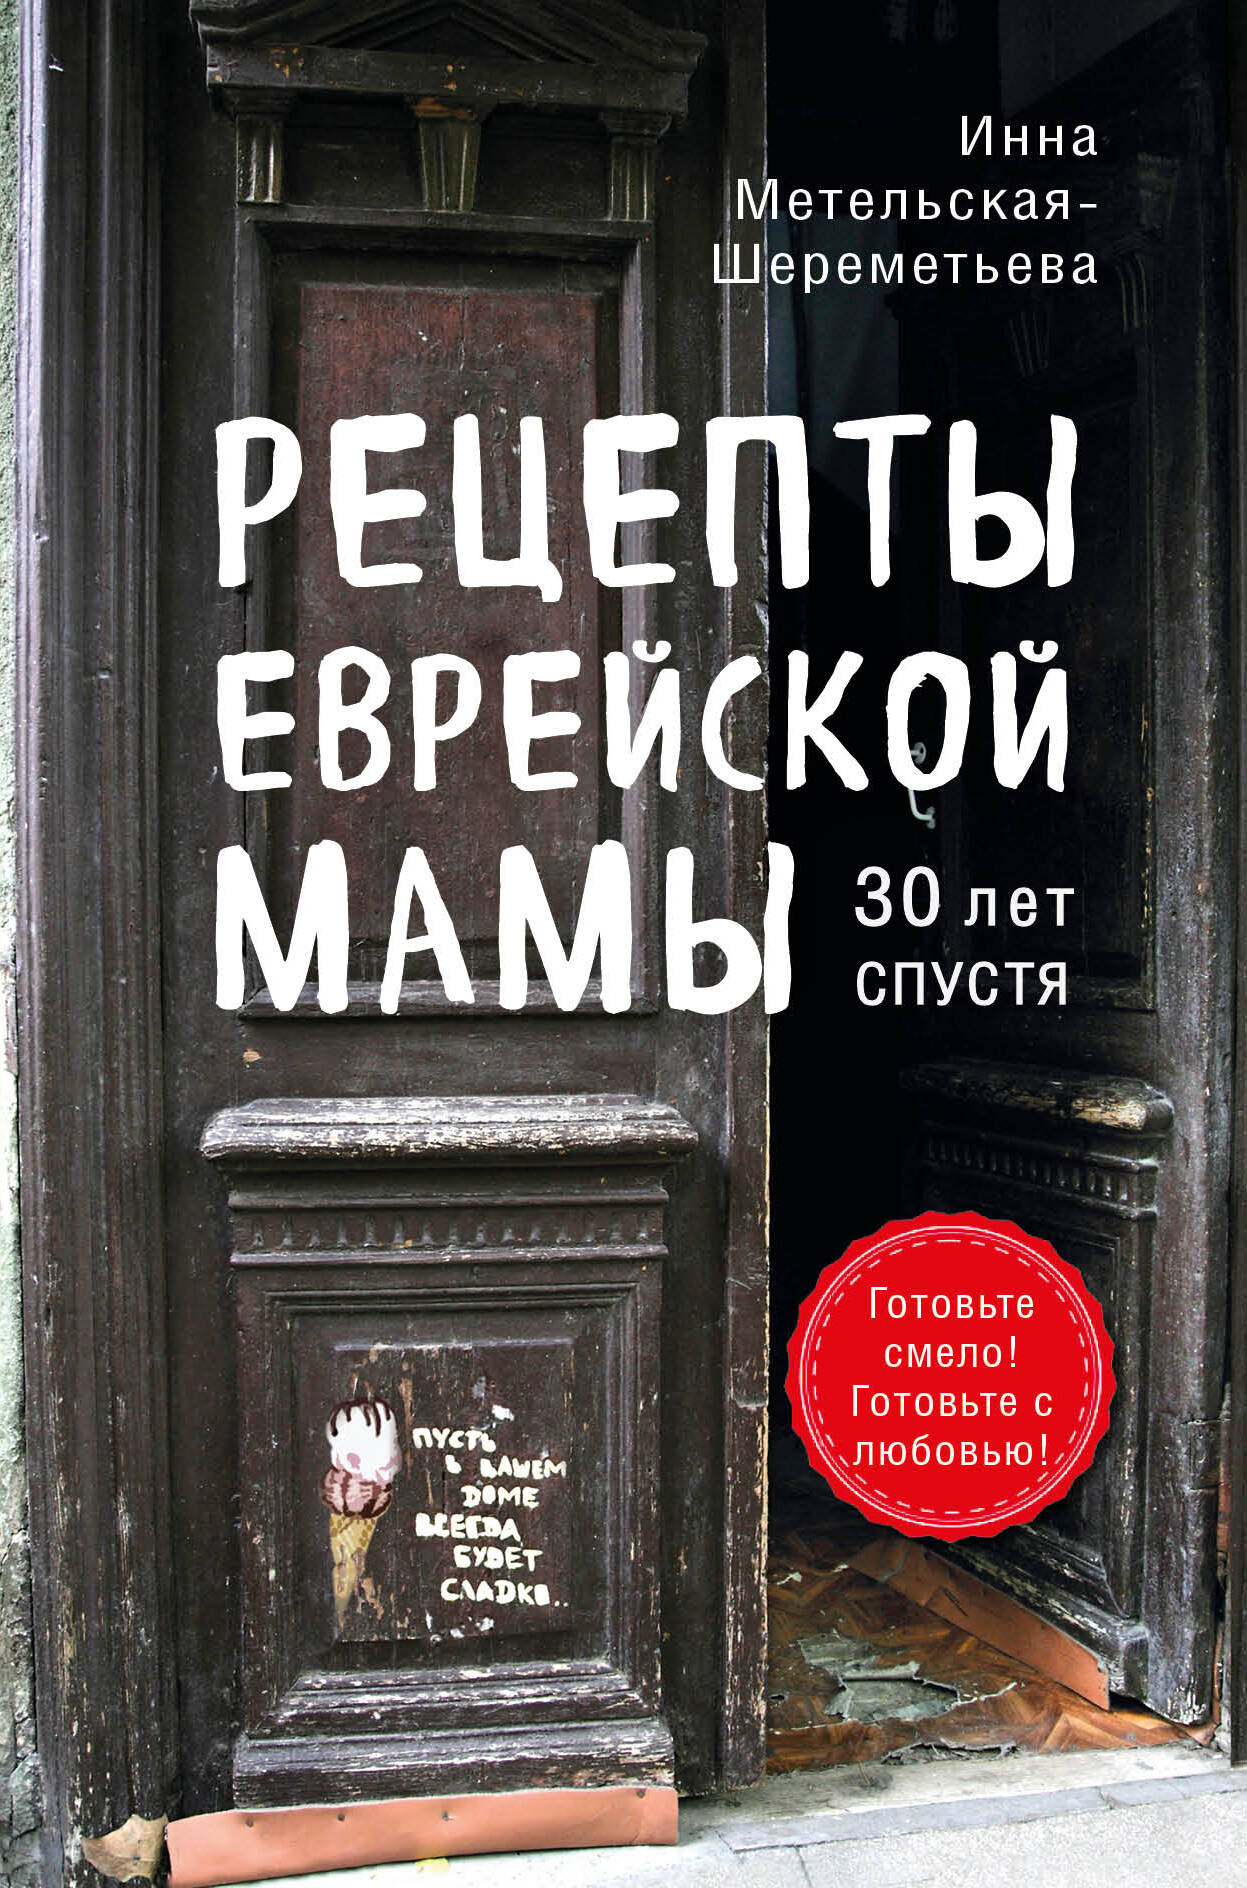 Метельская-Шереметьева Инна - Рецепты еврейской мамы. 30 лет спустя